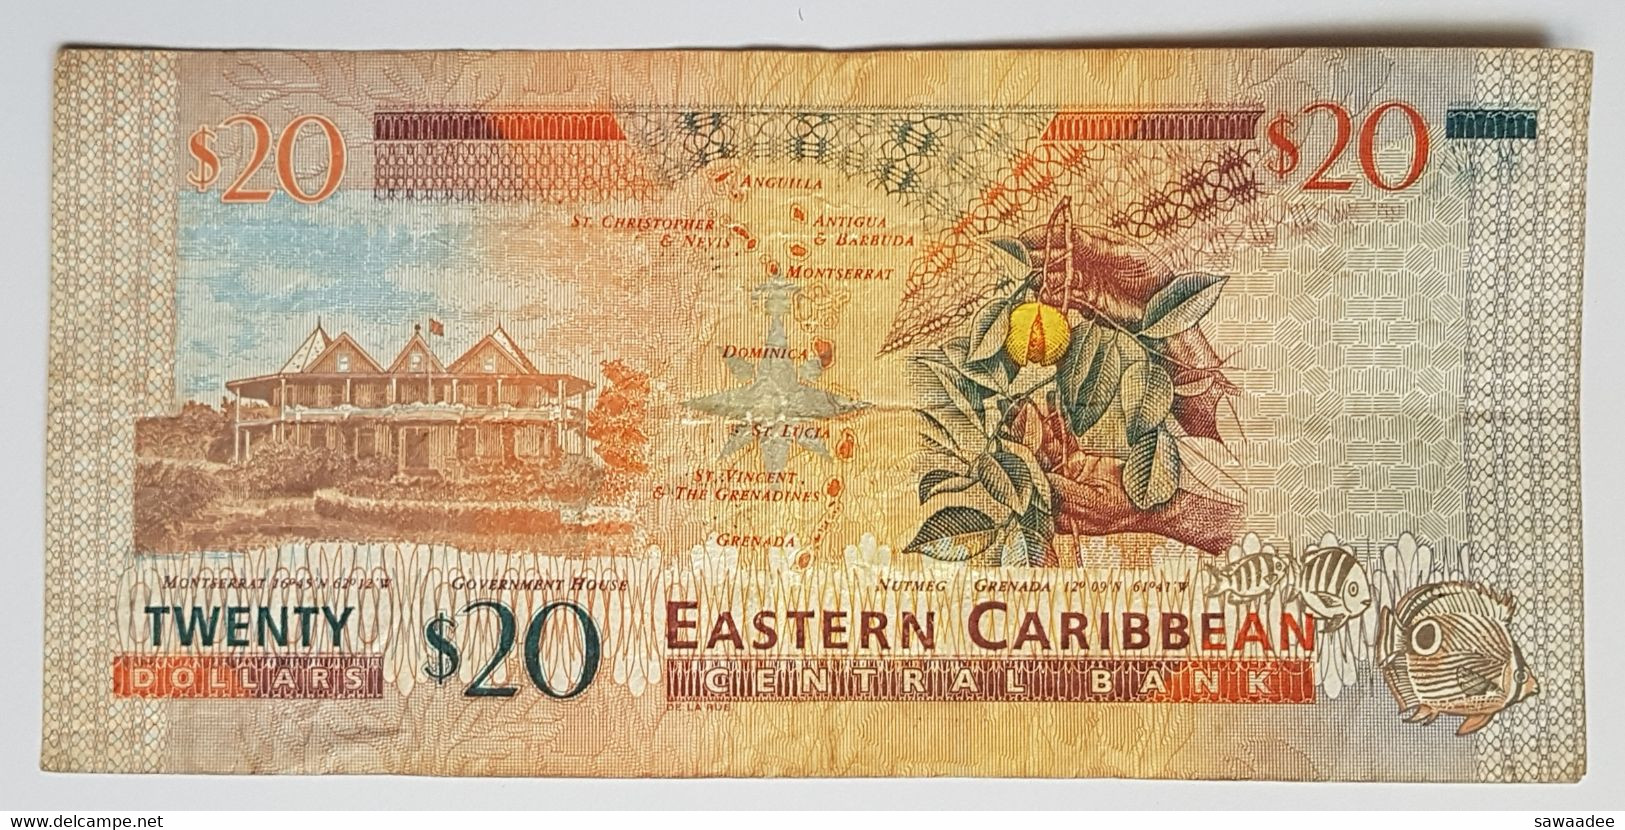 BILLET DE BANQUE - CARAÏBES ORIENTALES - ILE DE STE LUCIE - P.20 L - 20 $ - 1993 - ELISABETH II - TORTUE - FRUIT - East Carribeans